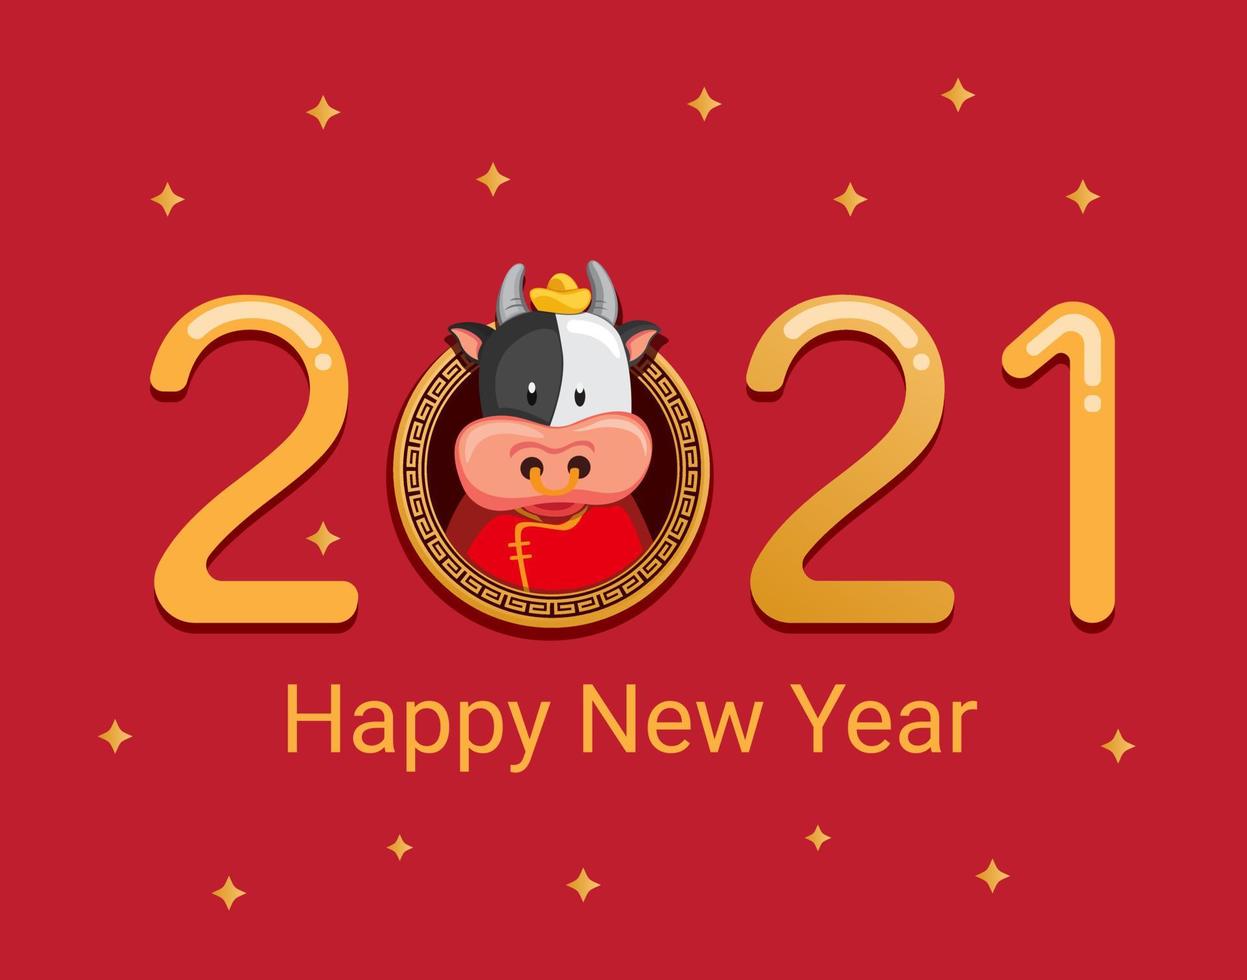 2021 feliz año nuevo con el concepto de carácter de vaca de metal del zodíaco chino en vector de ilustración de dibujos animados